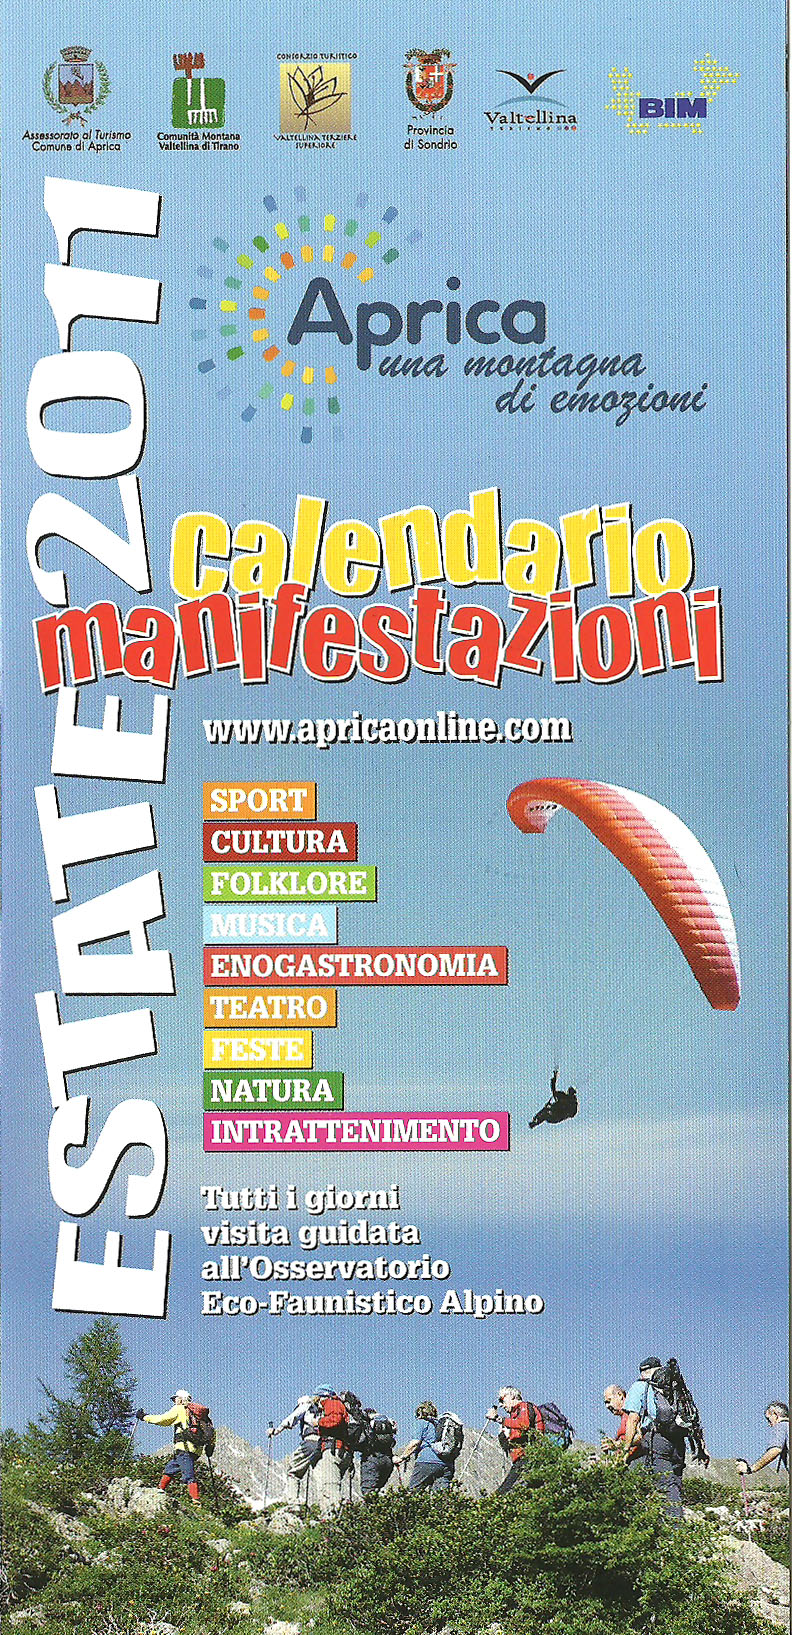 Aprica presenta il Calendario Manifestazioni Estate 2011